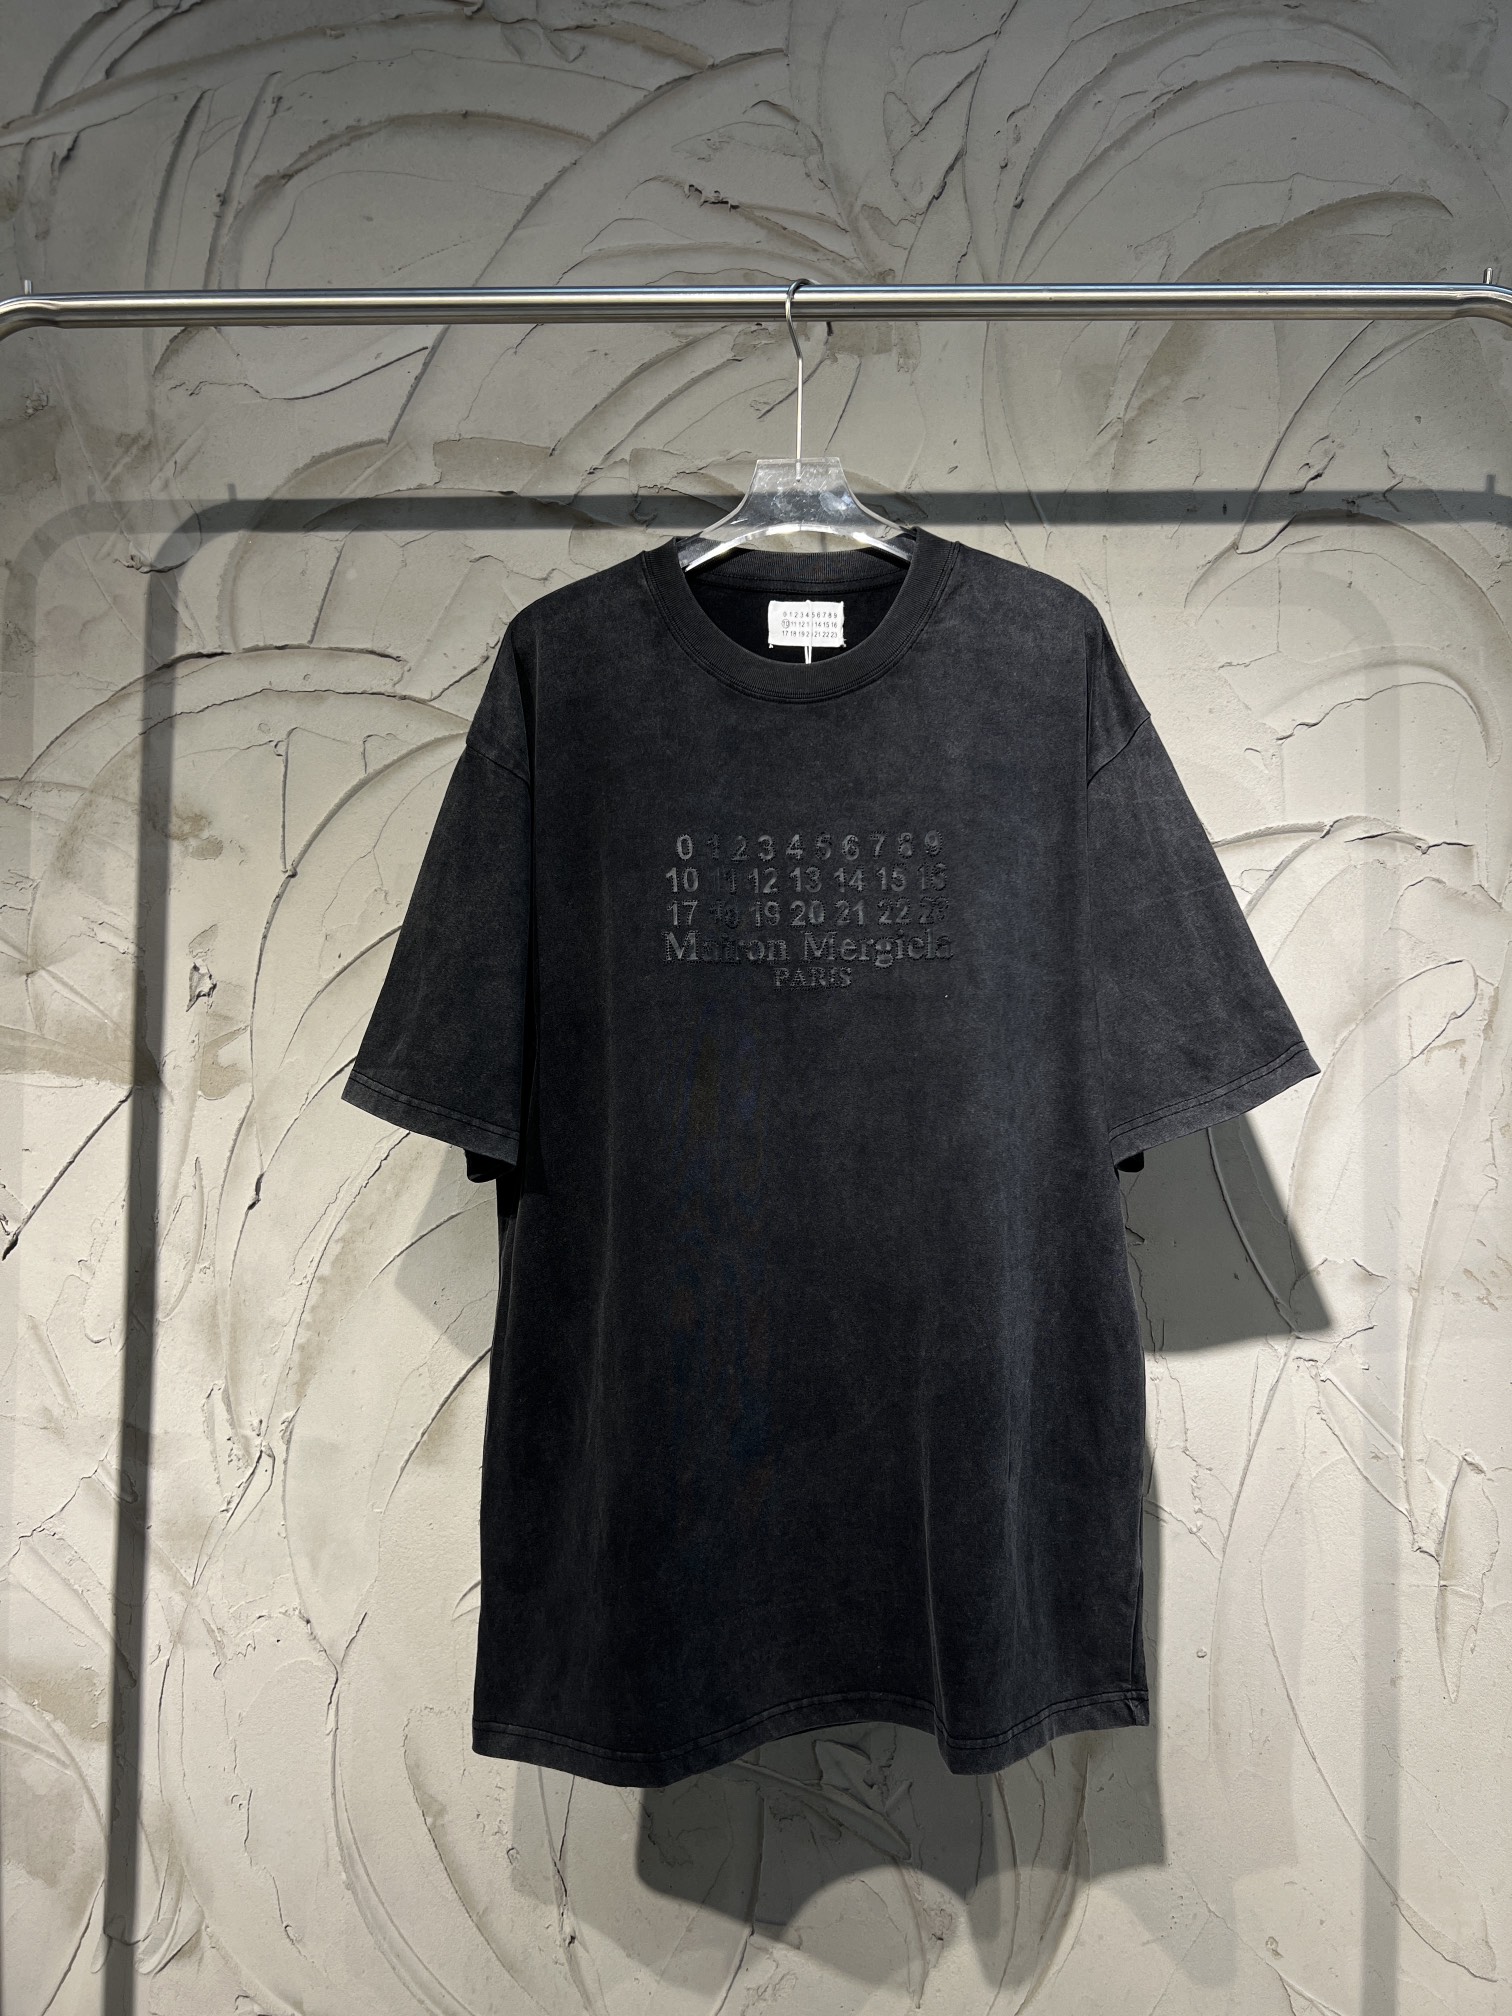 Maison Margiela Fake
 Clothing T-Shirt Black Unisex Cotton Vintage Short Sleeve